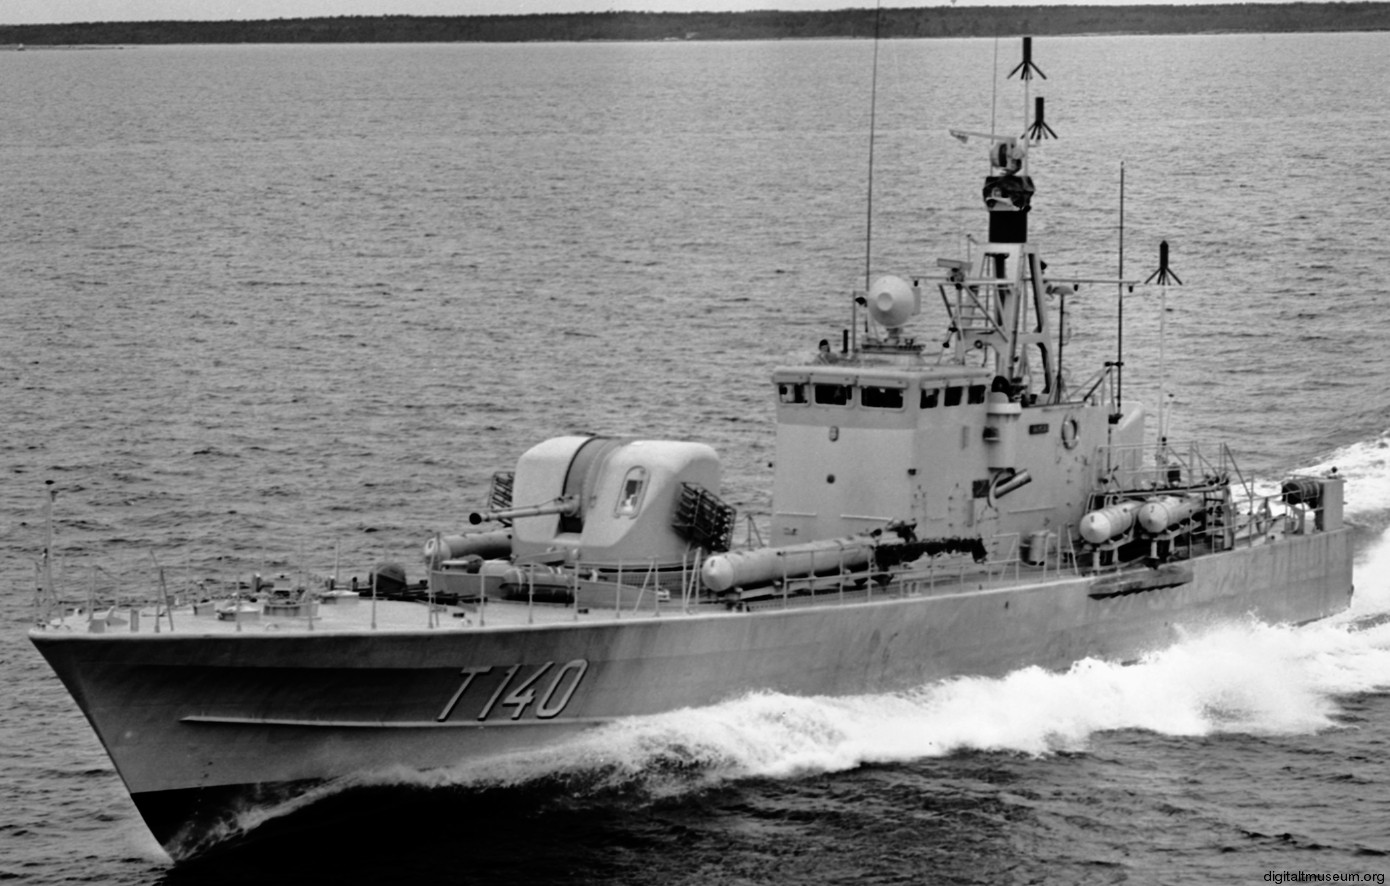 t140 halmstad hswms hms norrköping class fast attack craft torpedo missile patrol boat swedish navy svenska marinen 02